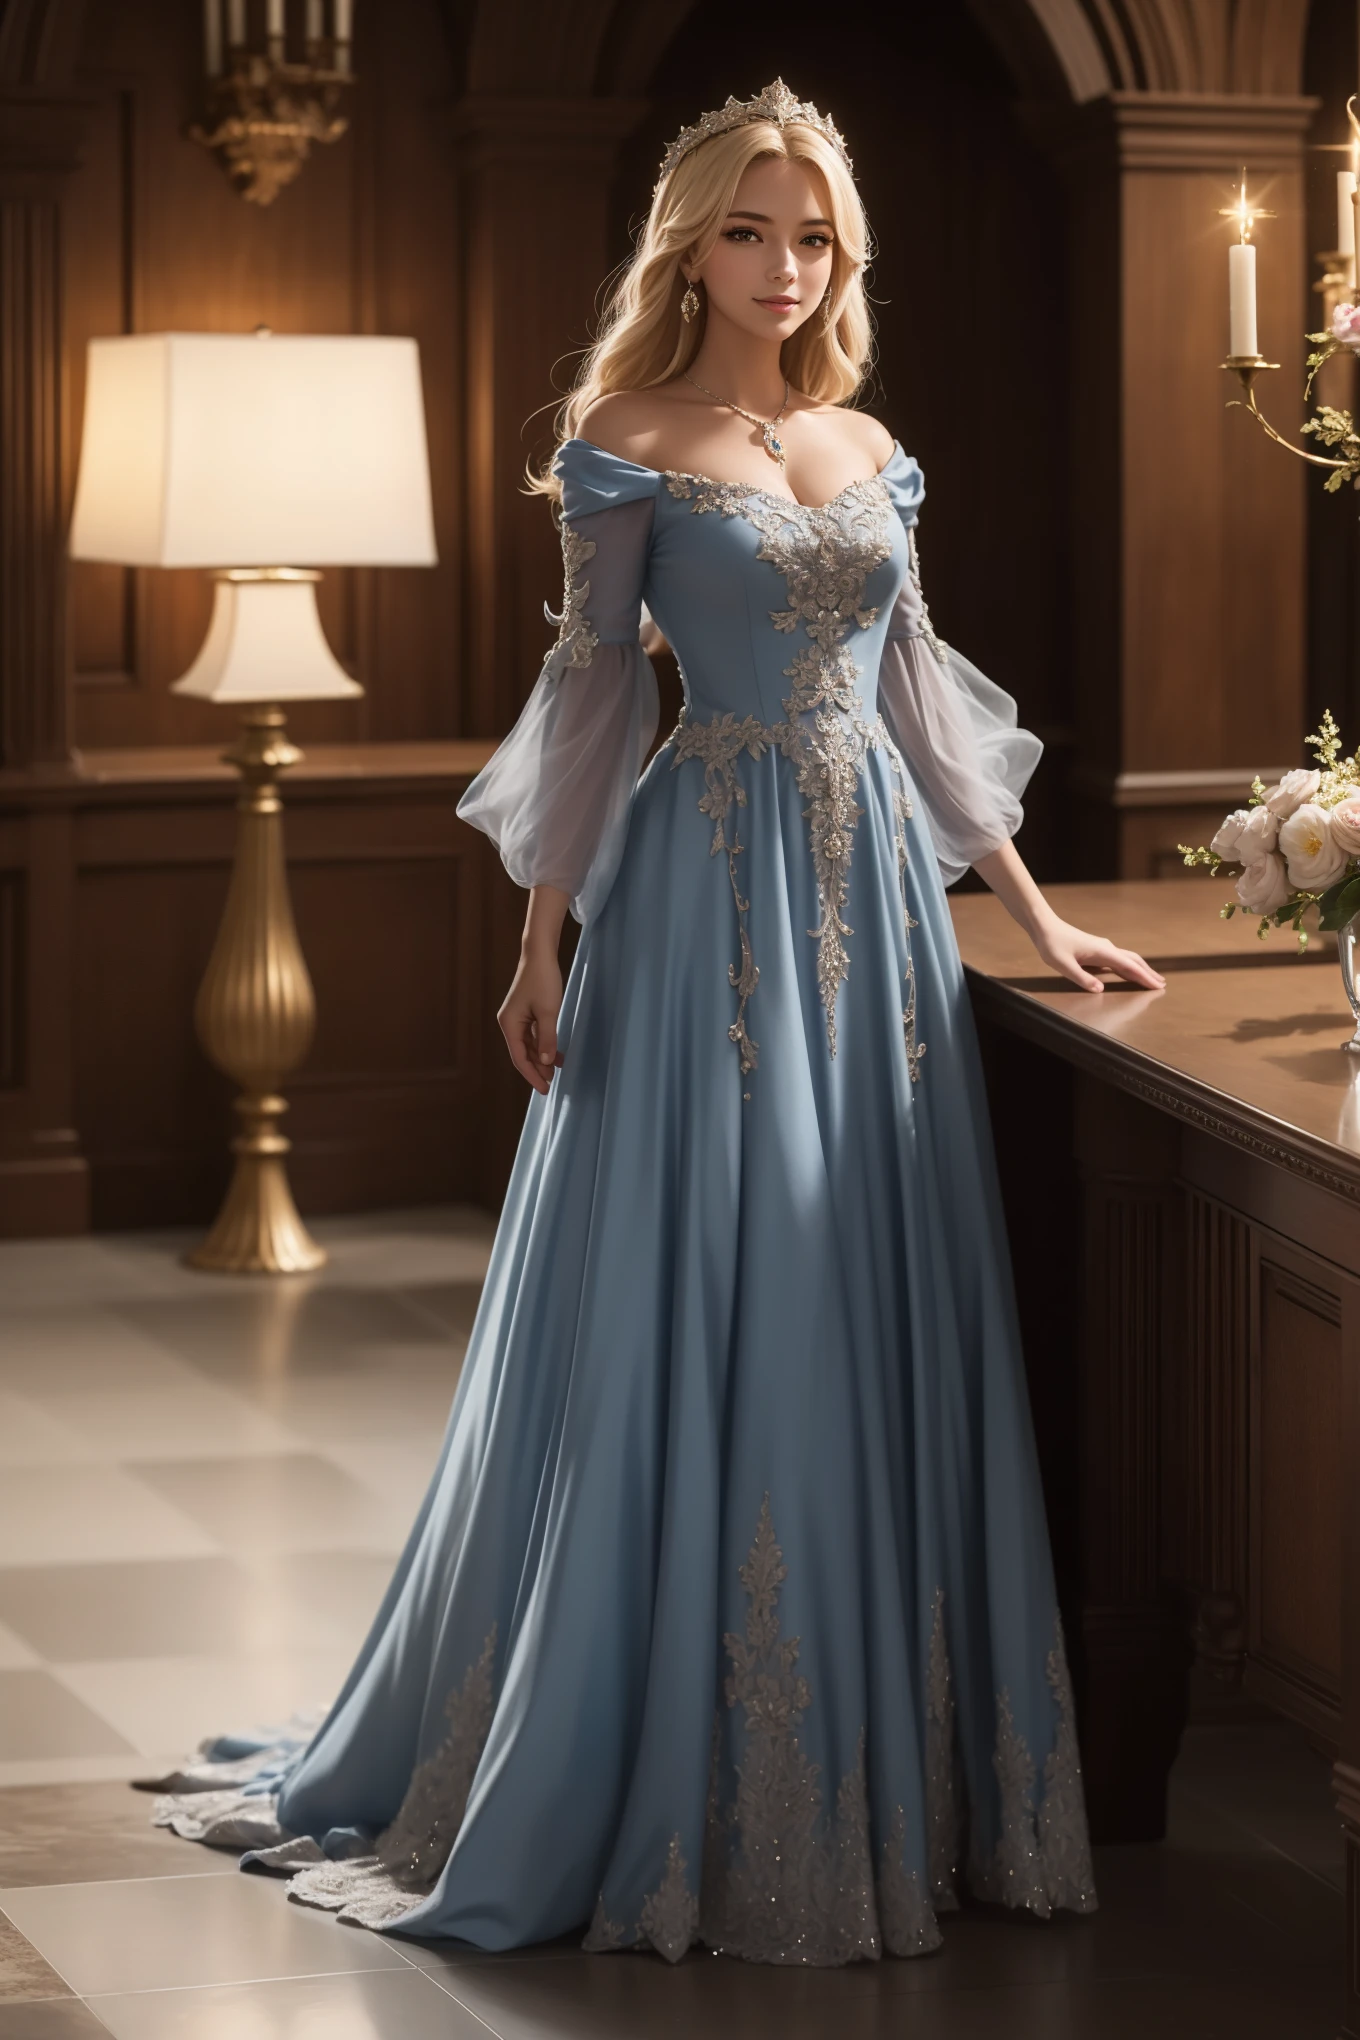 ((최고 품질、걸작、사실적인:1.4、8K로))、아름다운 여자들、18 살、아름다운 표정、금발의、매우 상세한 눈과 얼굴、아름답고 섬세한 눈、정장 장갑、（Gorgeous dark blue luxury dress in medieval 유럽 사람 style.、중세 유럽 스타일의 머리 장식.)、빨간 드레스、럭셔리 액세서리、（A woman walks along the corridor of a 유럽 사람-style castle）、유리 신발、영화 조명、질감이 있는 가죽、슈퍼 디테일、높은 디테일、고품질、고해상도、나는 뷰어를 본다、우아한 미소、전신、유럽 사람、